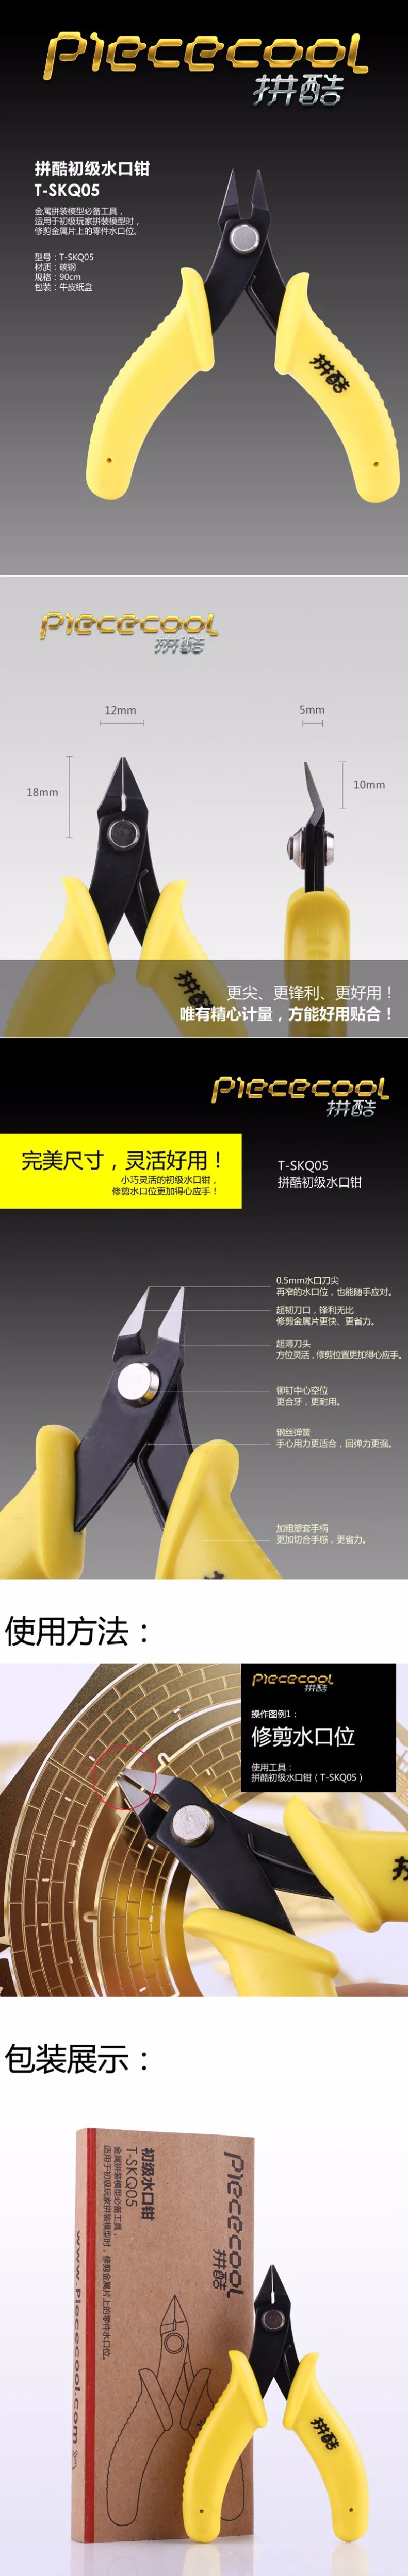 Piececool 2 шт. набор начинающих 3D металлические инструменты для головоломок для DIY лазерная резка сборка паззл игрушки с T-SKQ05, T-JZQ05